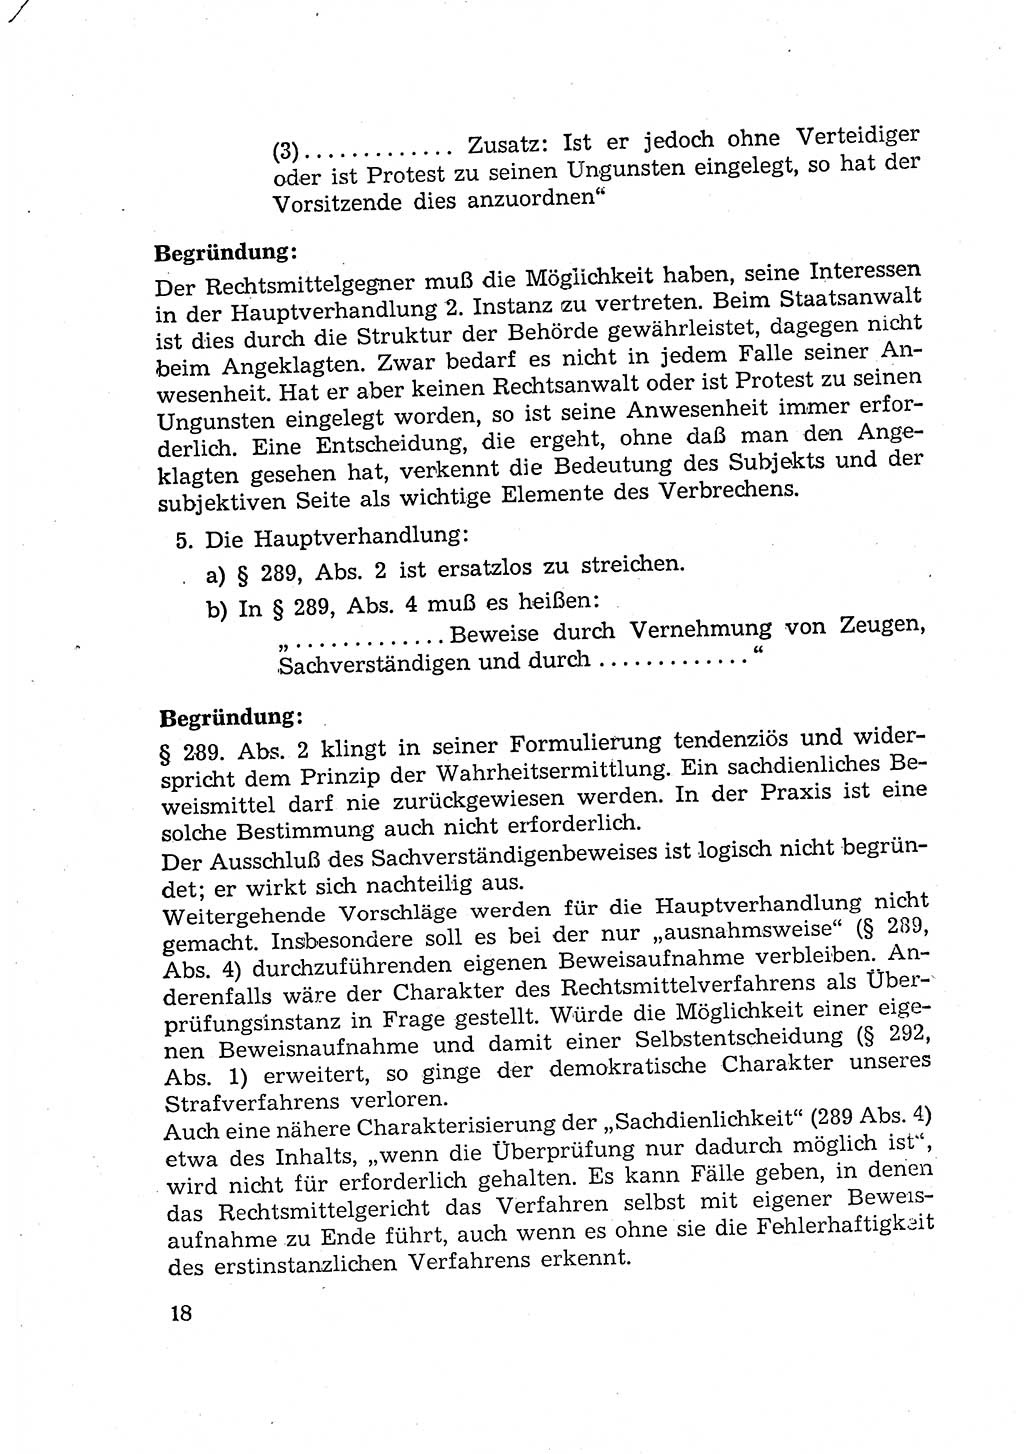 Bericht der Kommission zur Überprüfung der Anwendung der StPO (Strafprozeßordnung) [Deutsche Demokratische Republik (DDR)] 1956, Seite 18 (Ber. StPO DDR 1956, S. 18)